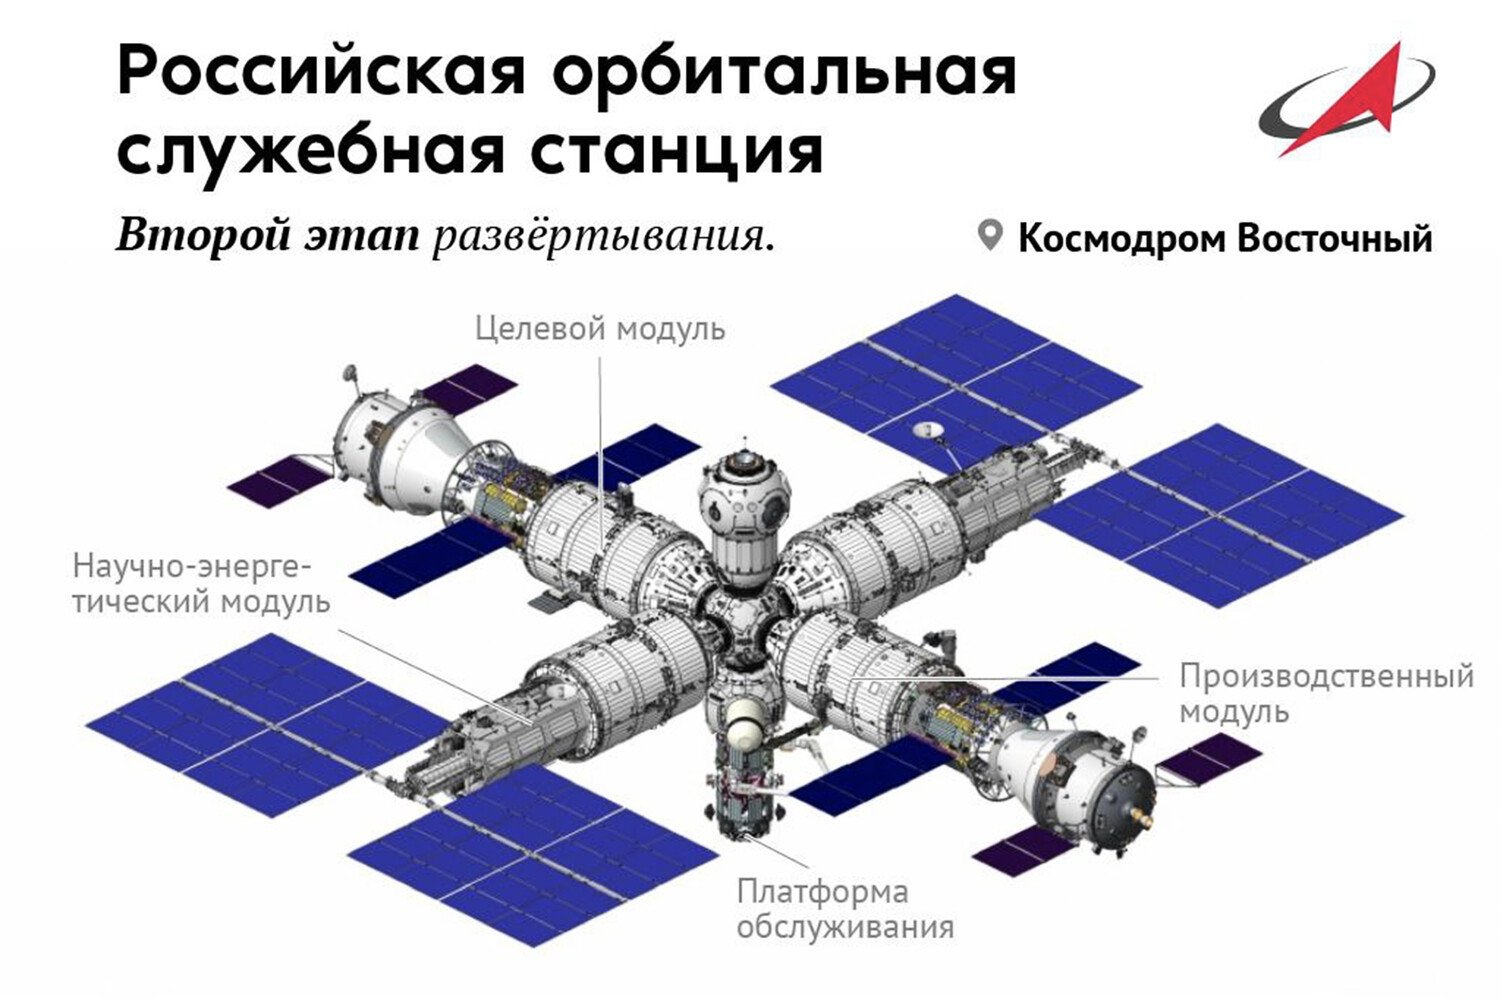 В «Роскосмосе» рассказали о ходе работ по созданию орбитальной станции